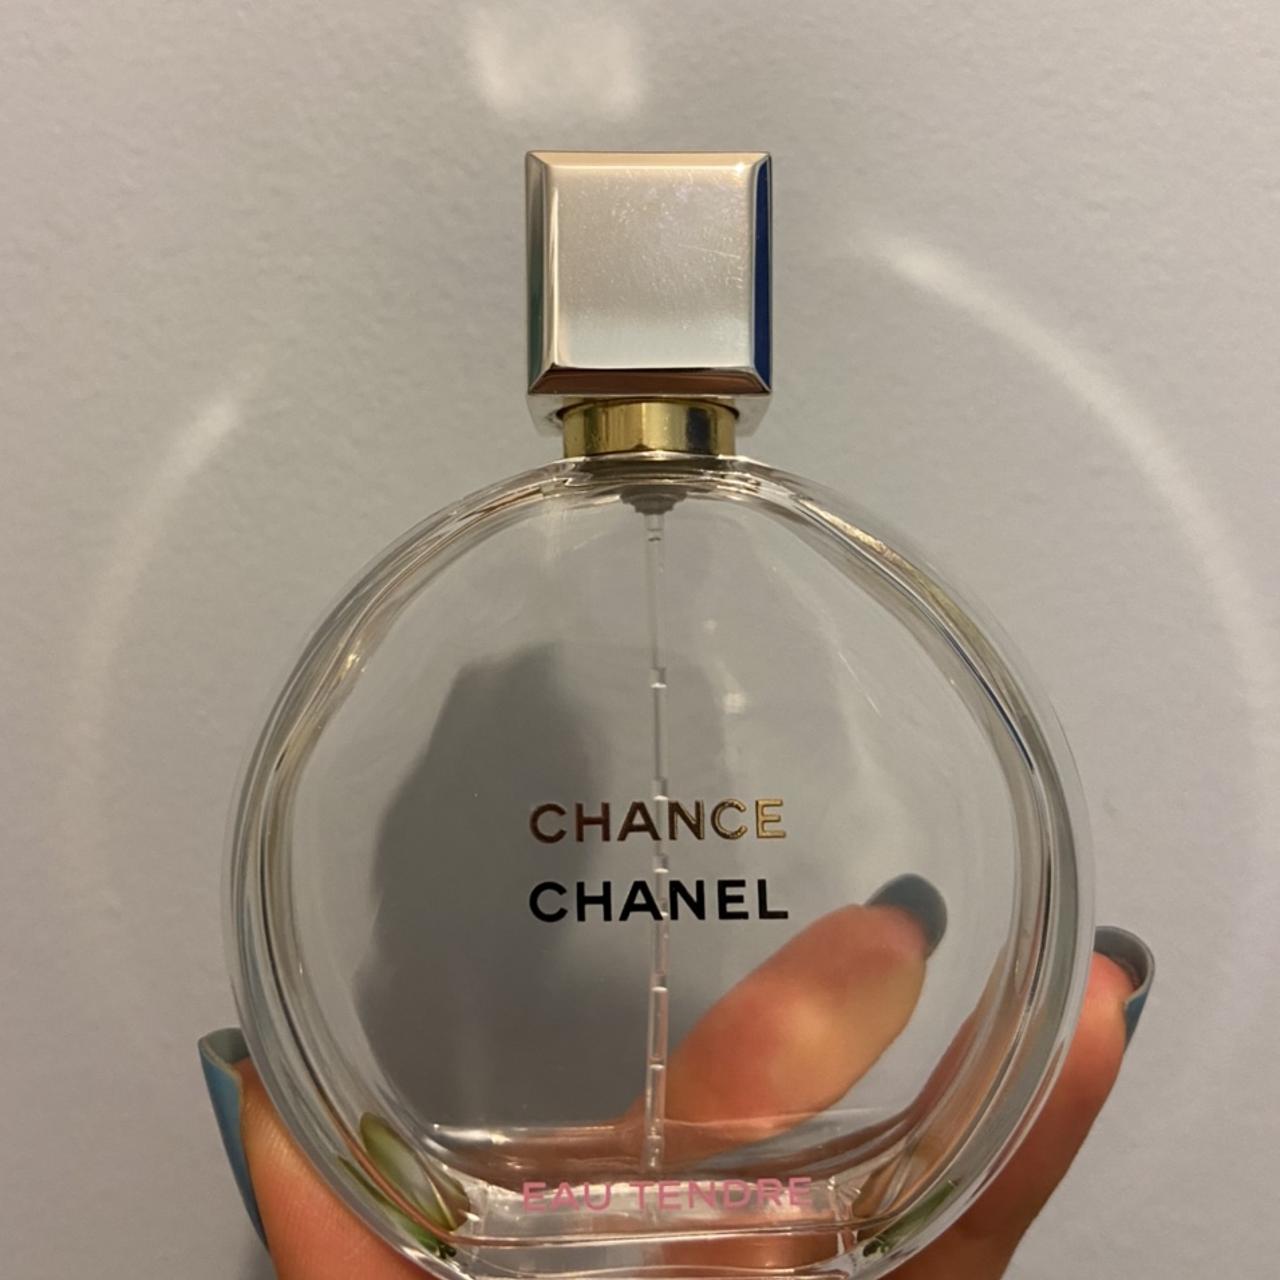 EMPTY CHANEL PERFUME BOTTLES Chanel CHANCE eau - Depop